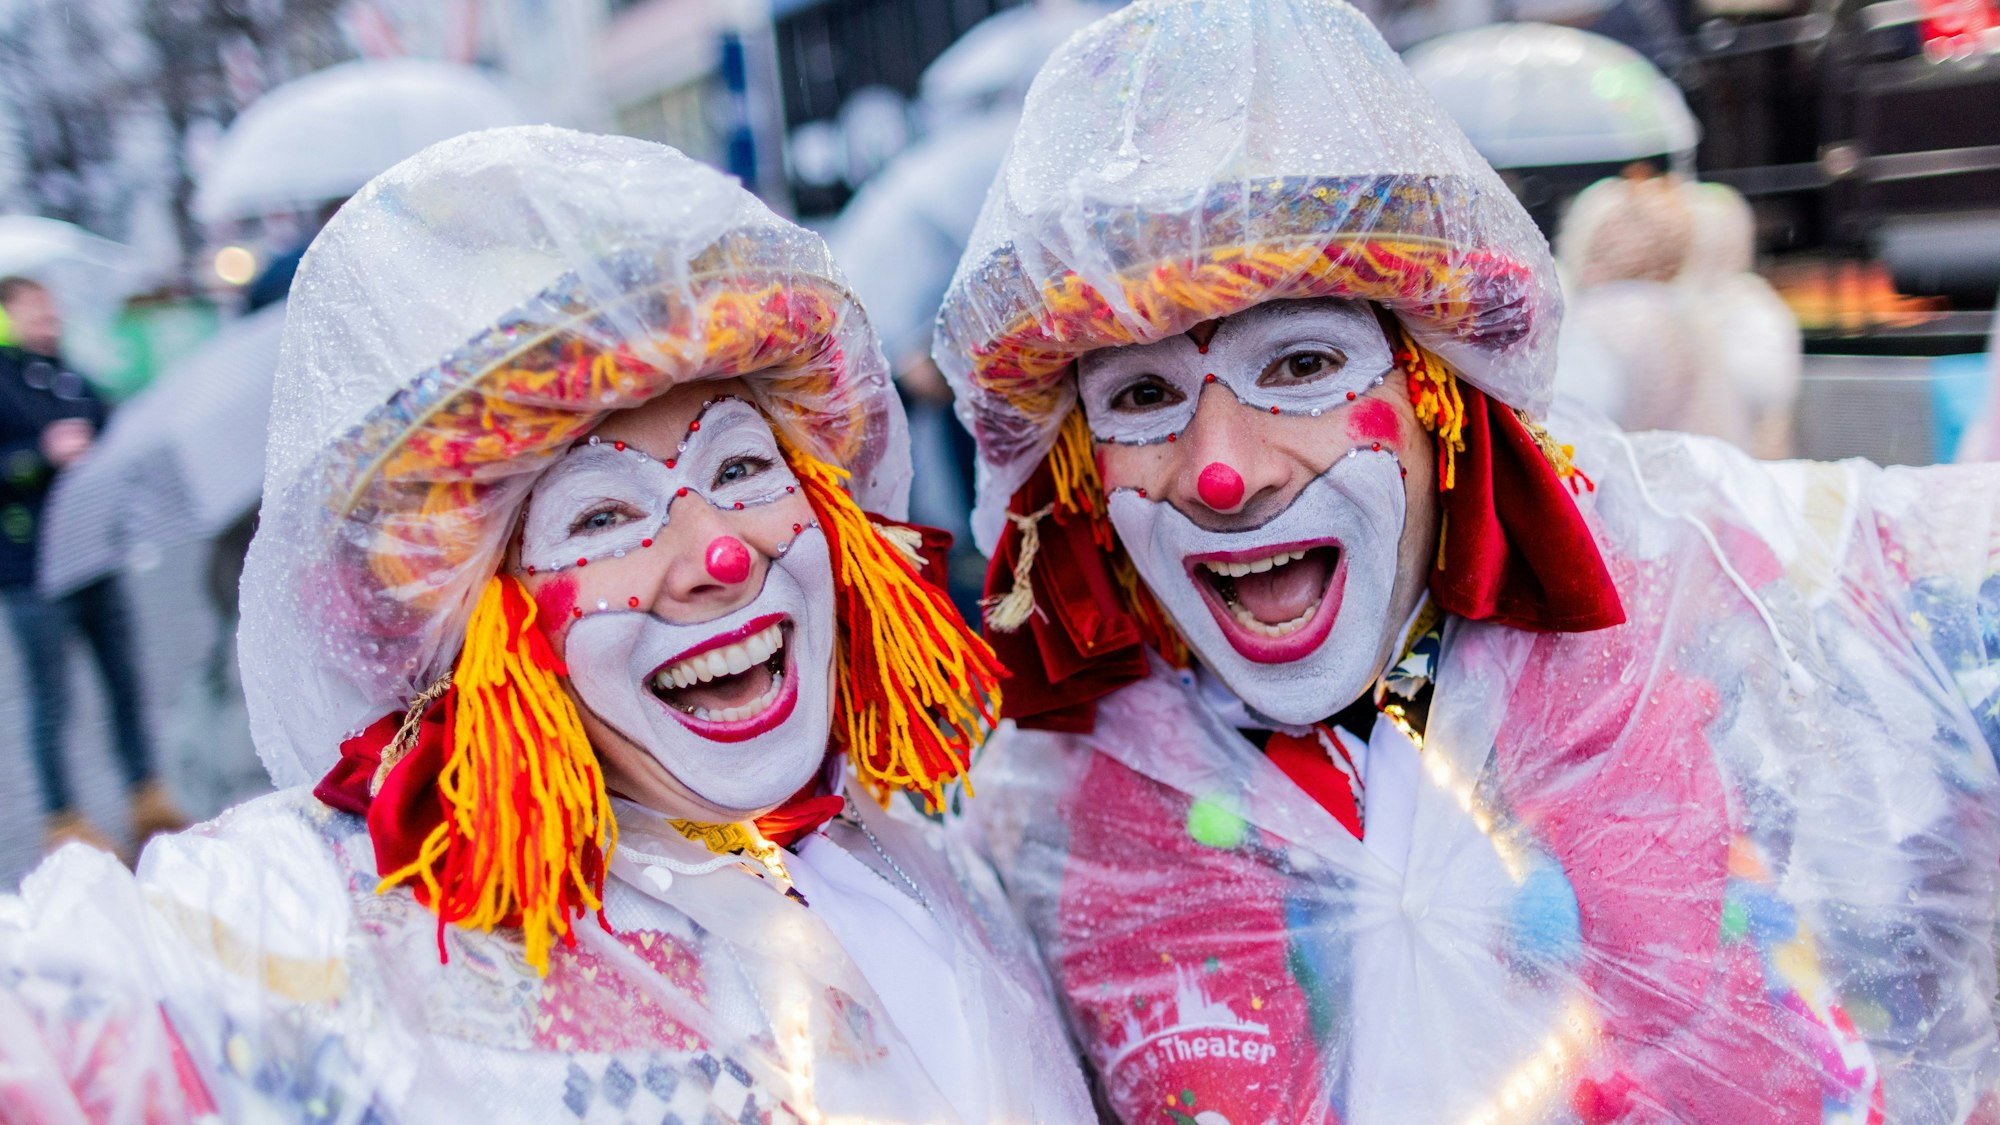 Wer ein richtiger Karnevalist ist, der hat sich wetterfest vorbereitet. Diese Clowns haben sich von Kopf bis Fuß in Plastikfolie gehüllt und trotzen dem strömenden Regen.